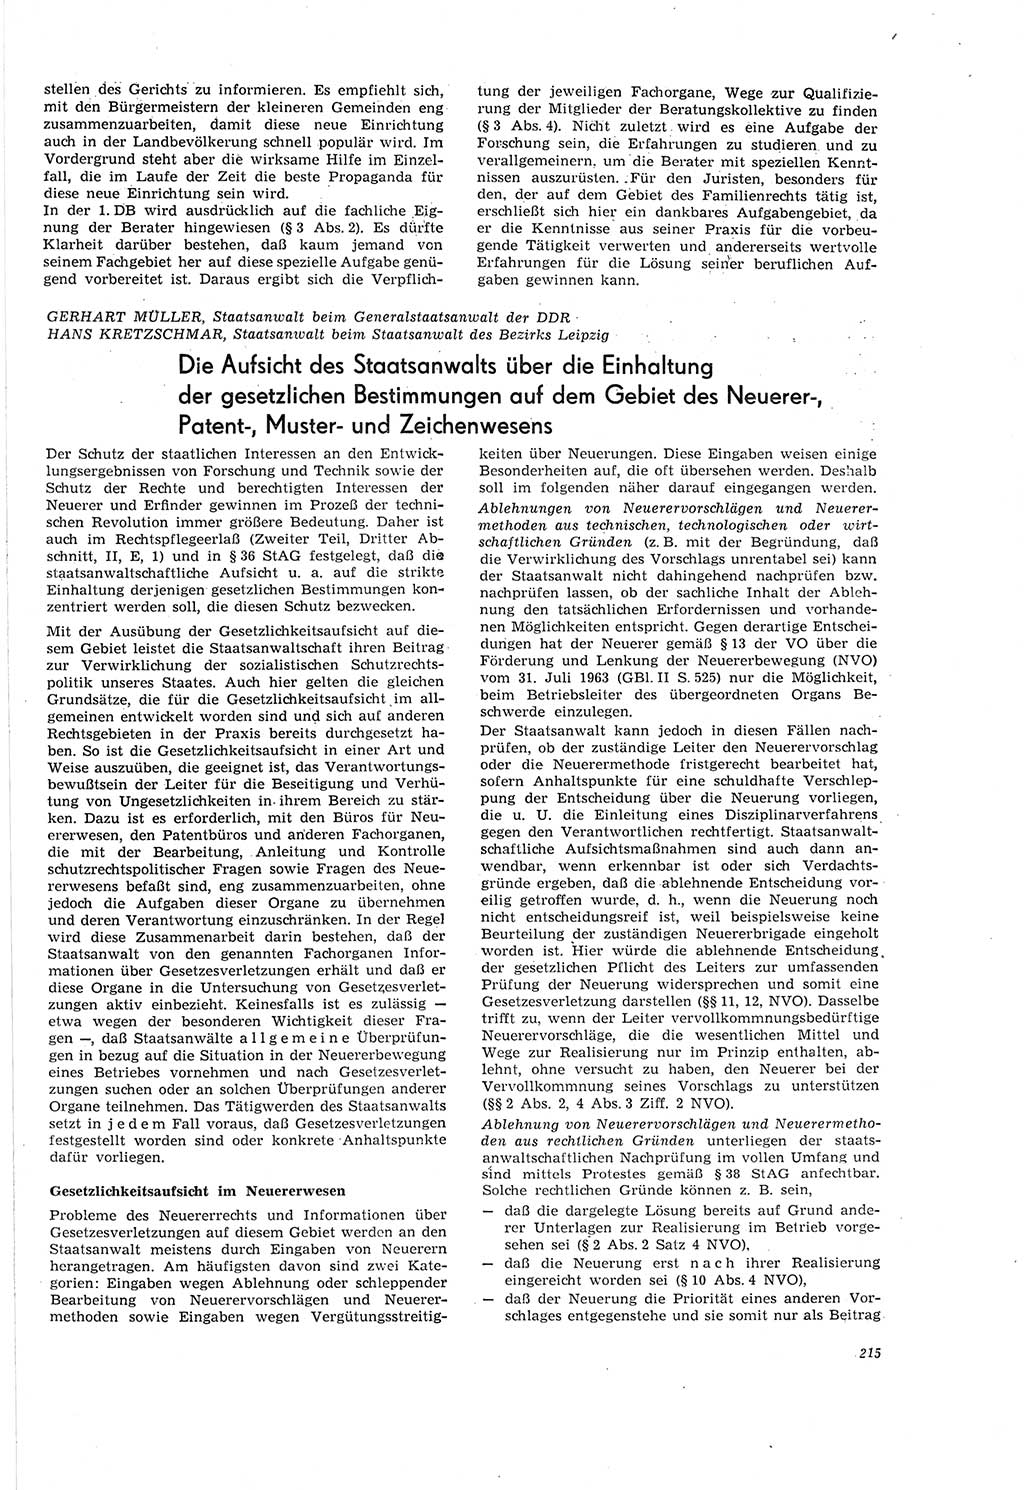 Neue Justiz (NJ), Zeitschrift für Recht und Rechtswissenschaft [Deutsche Demokratische Republik (DDR)], 20. Jahrgang 1966, Seite 215 (NJ DDR 1966, S. 215)